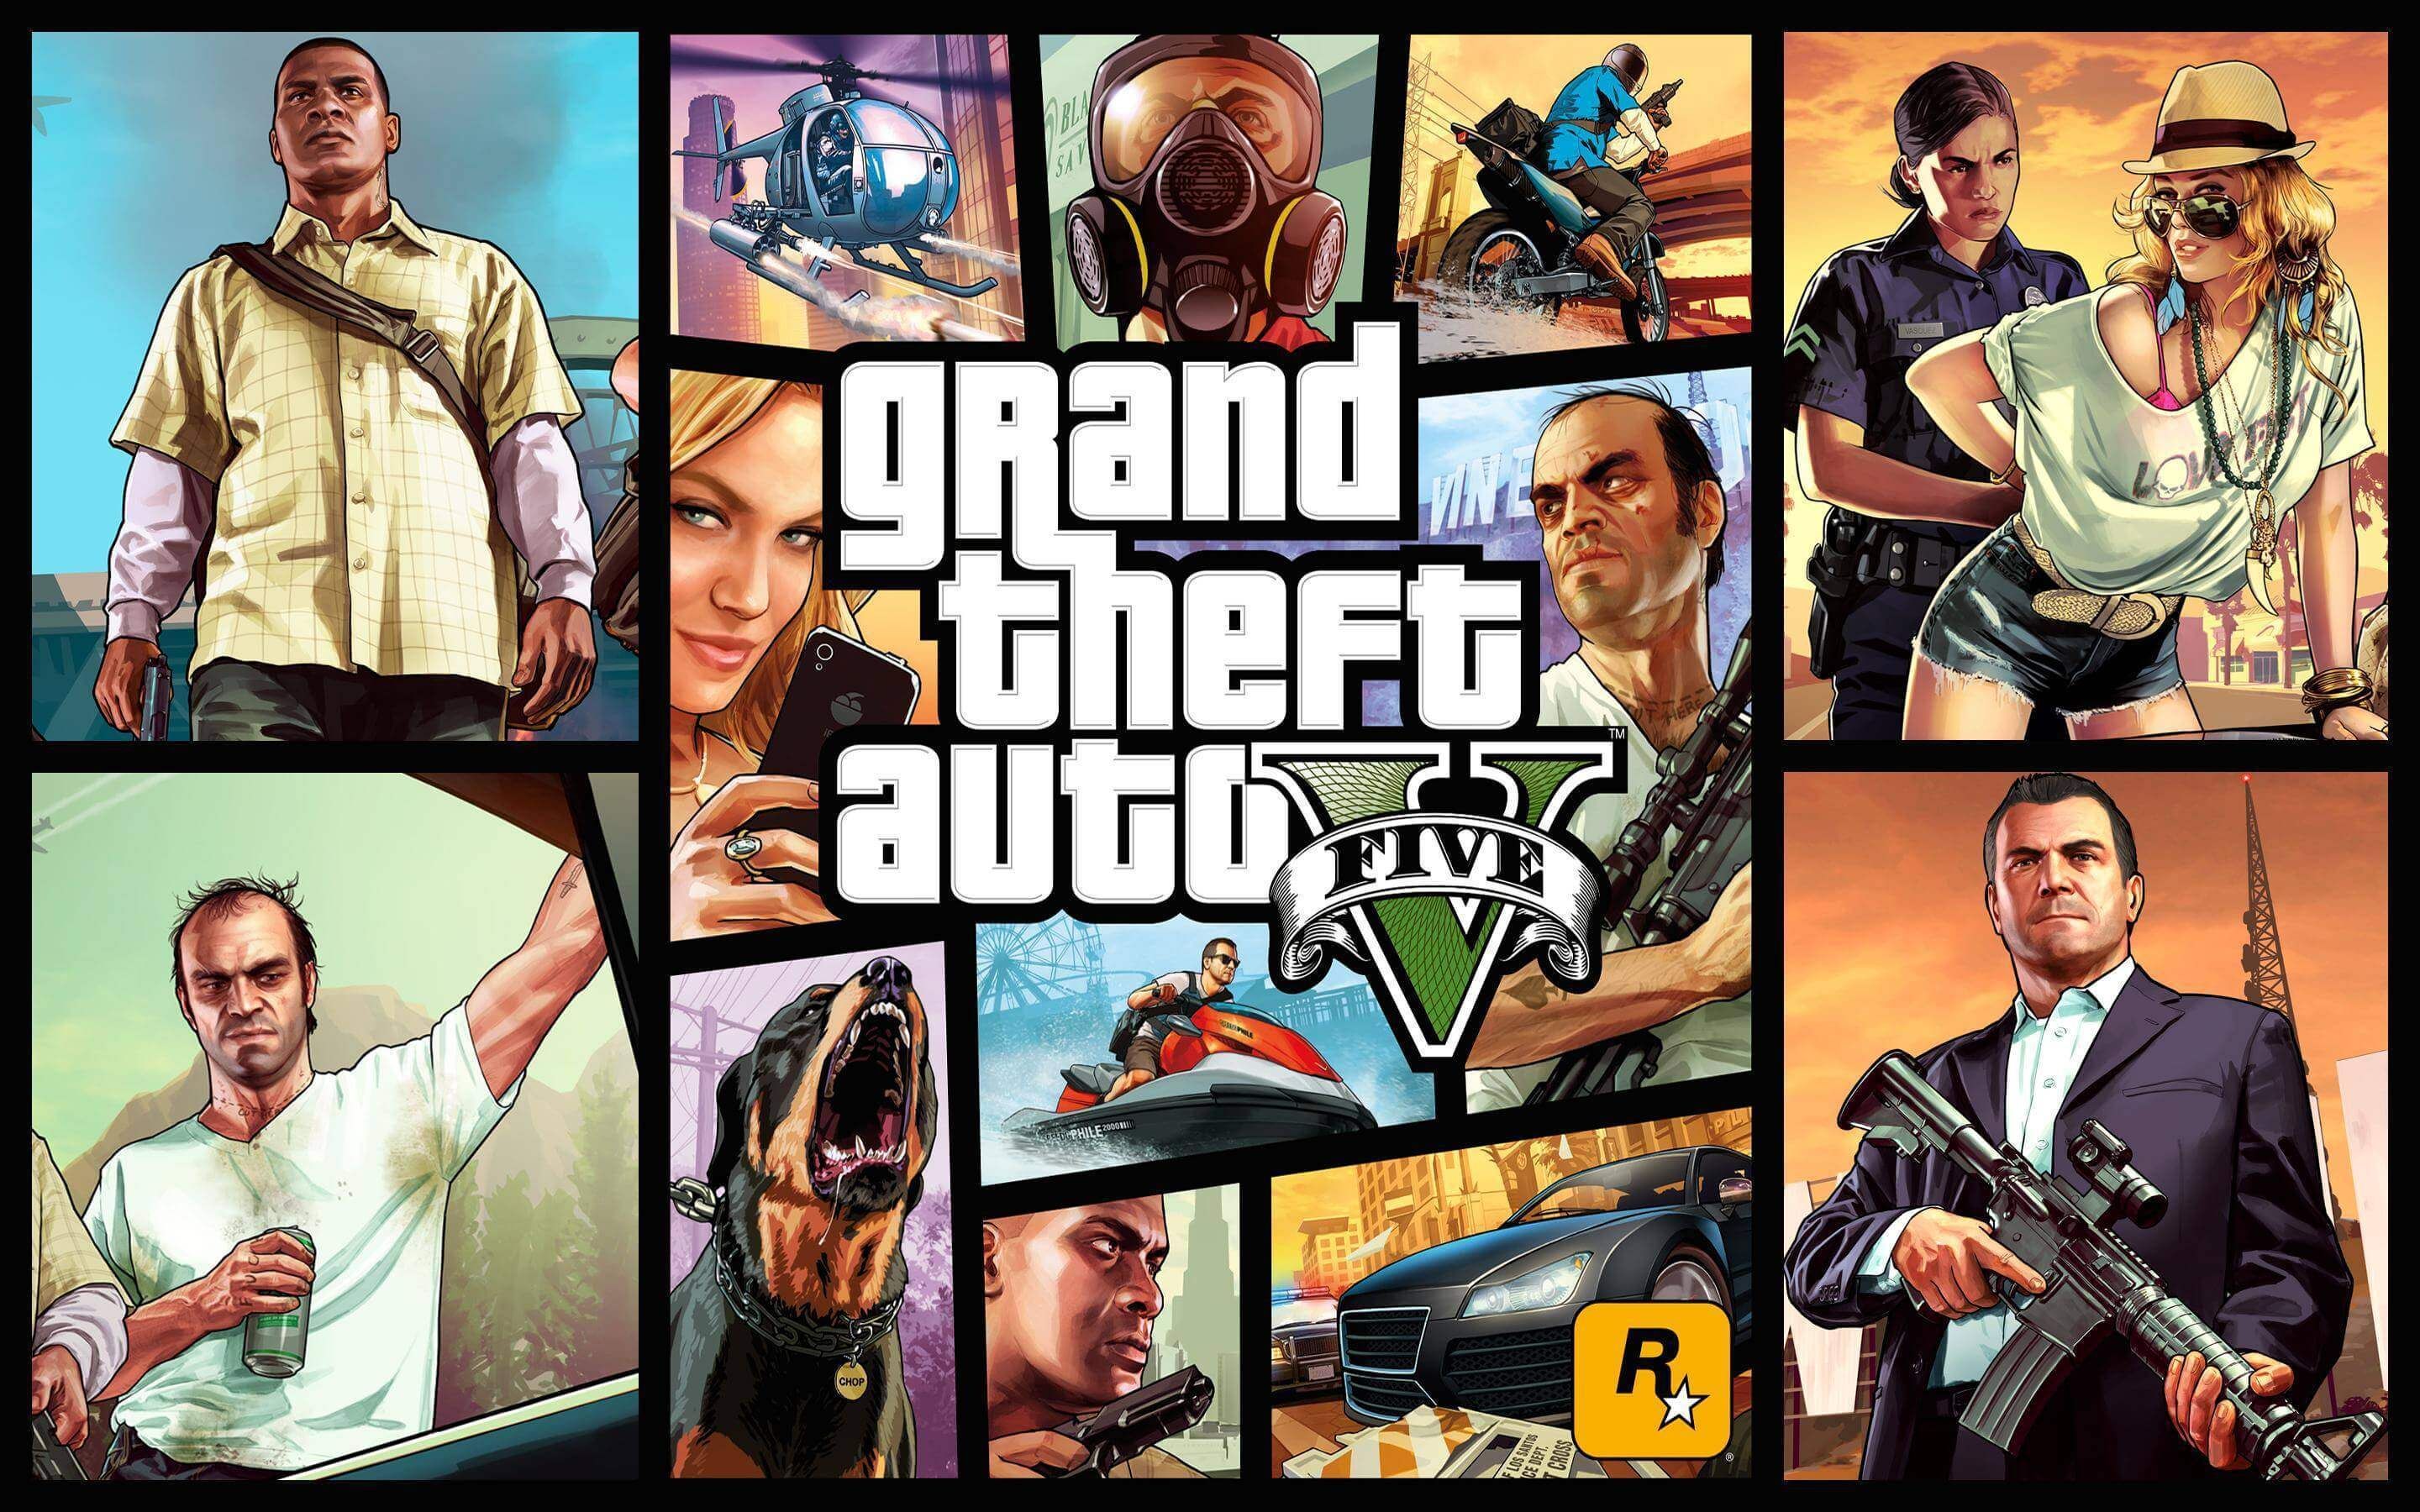 llustrasi download GTA 5 yang legal dari Rockstar Games